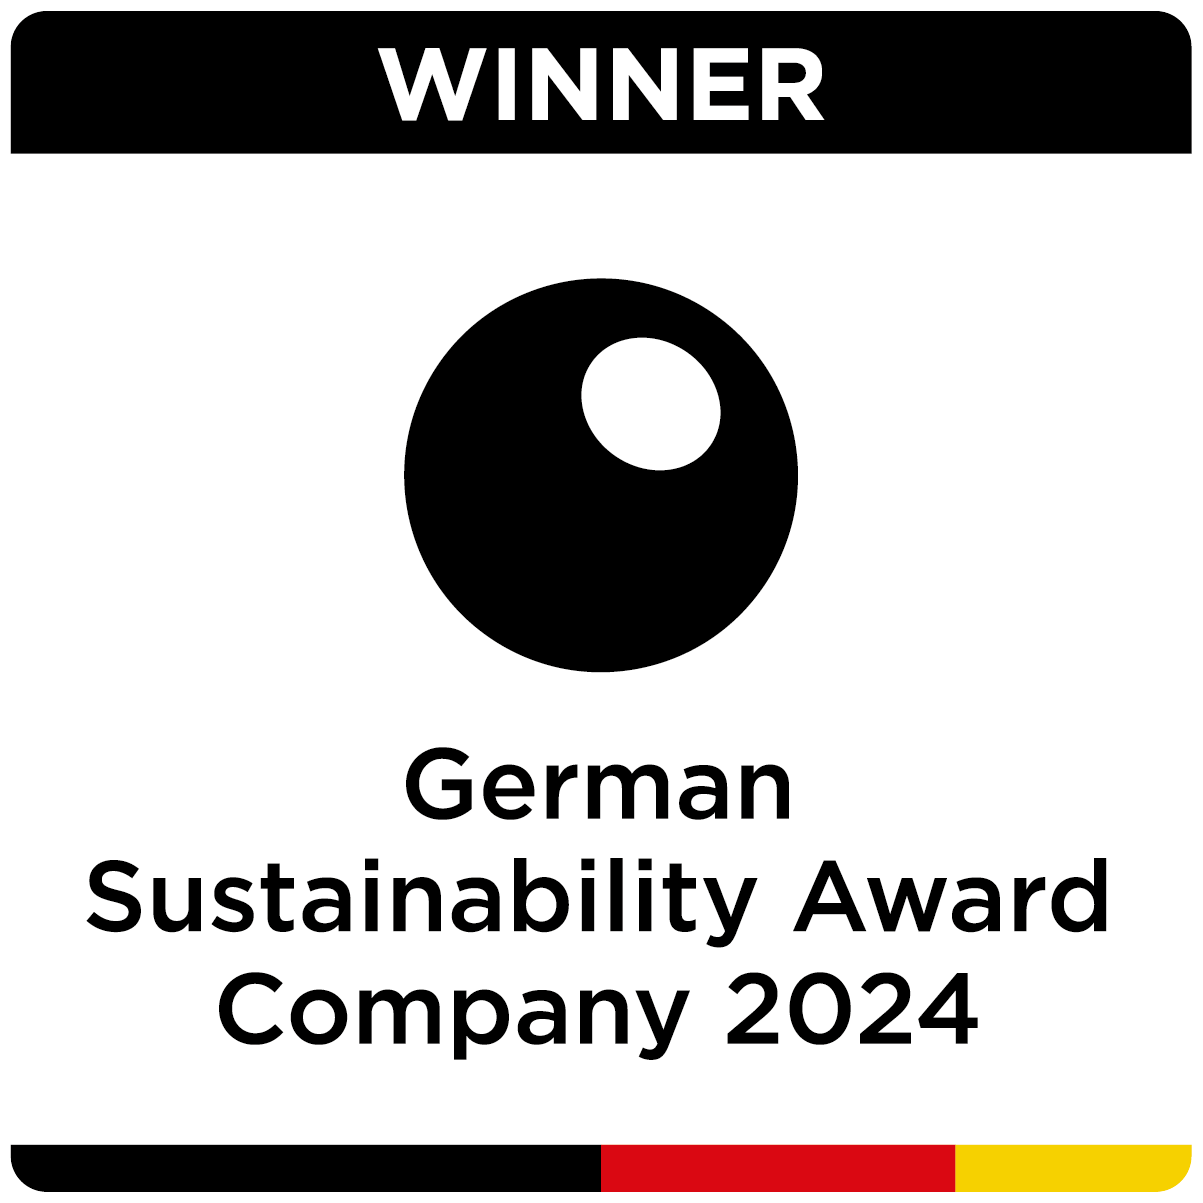 German Sustainability Award 2024, Deutscher Nachhaltigkeitspreis 2024